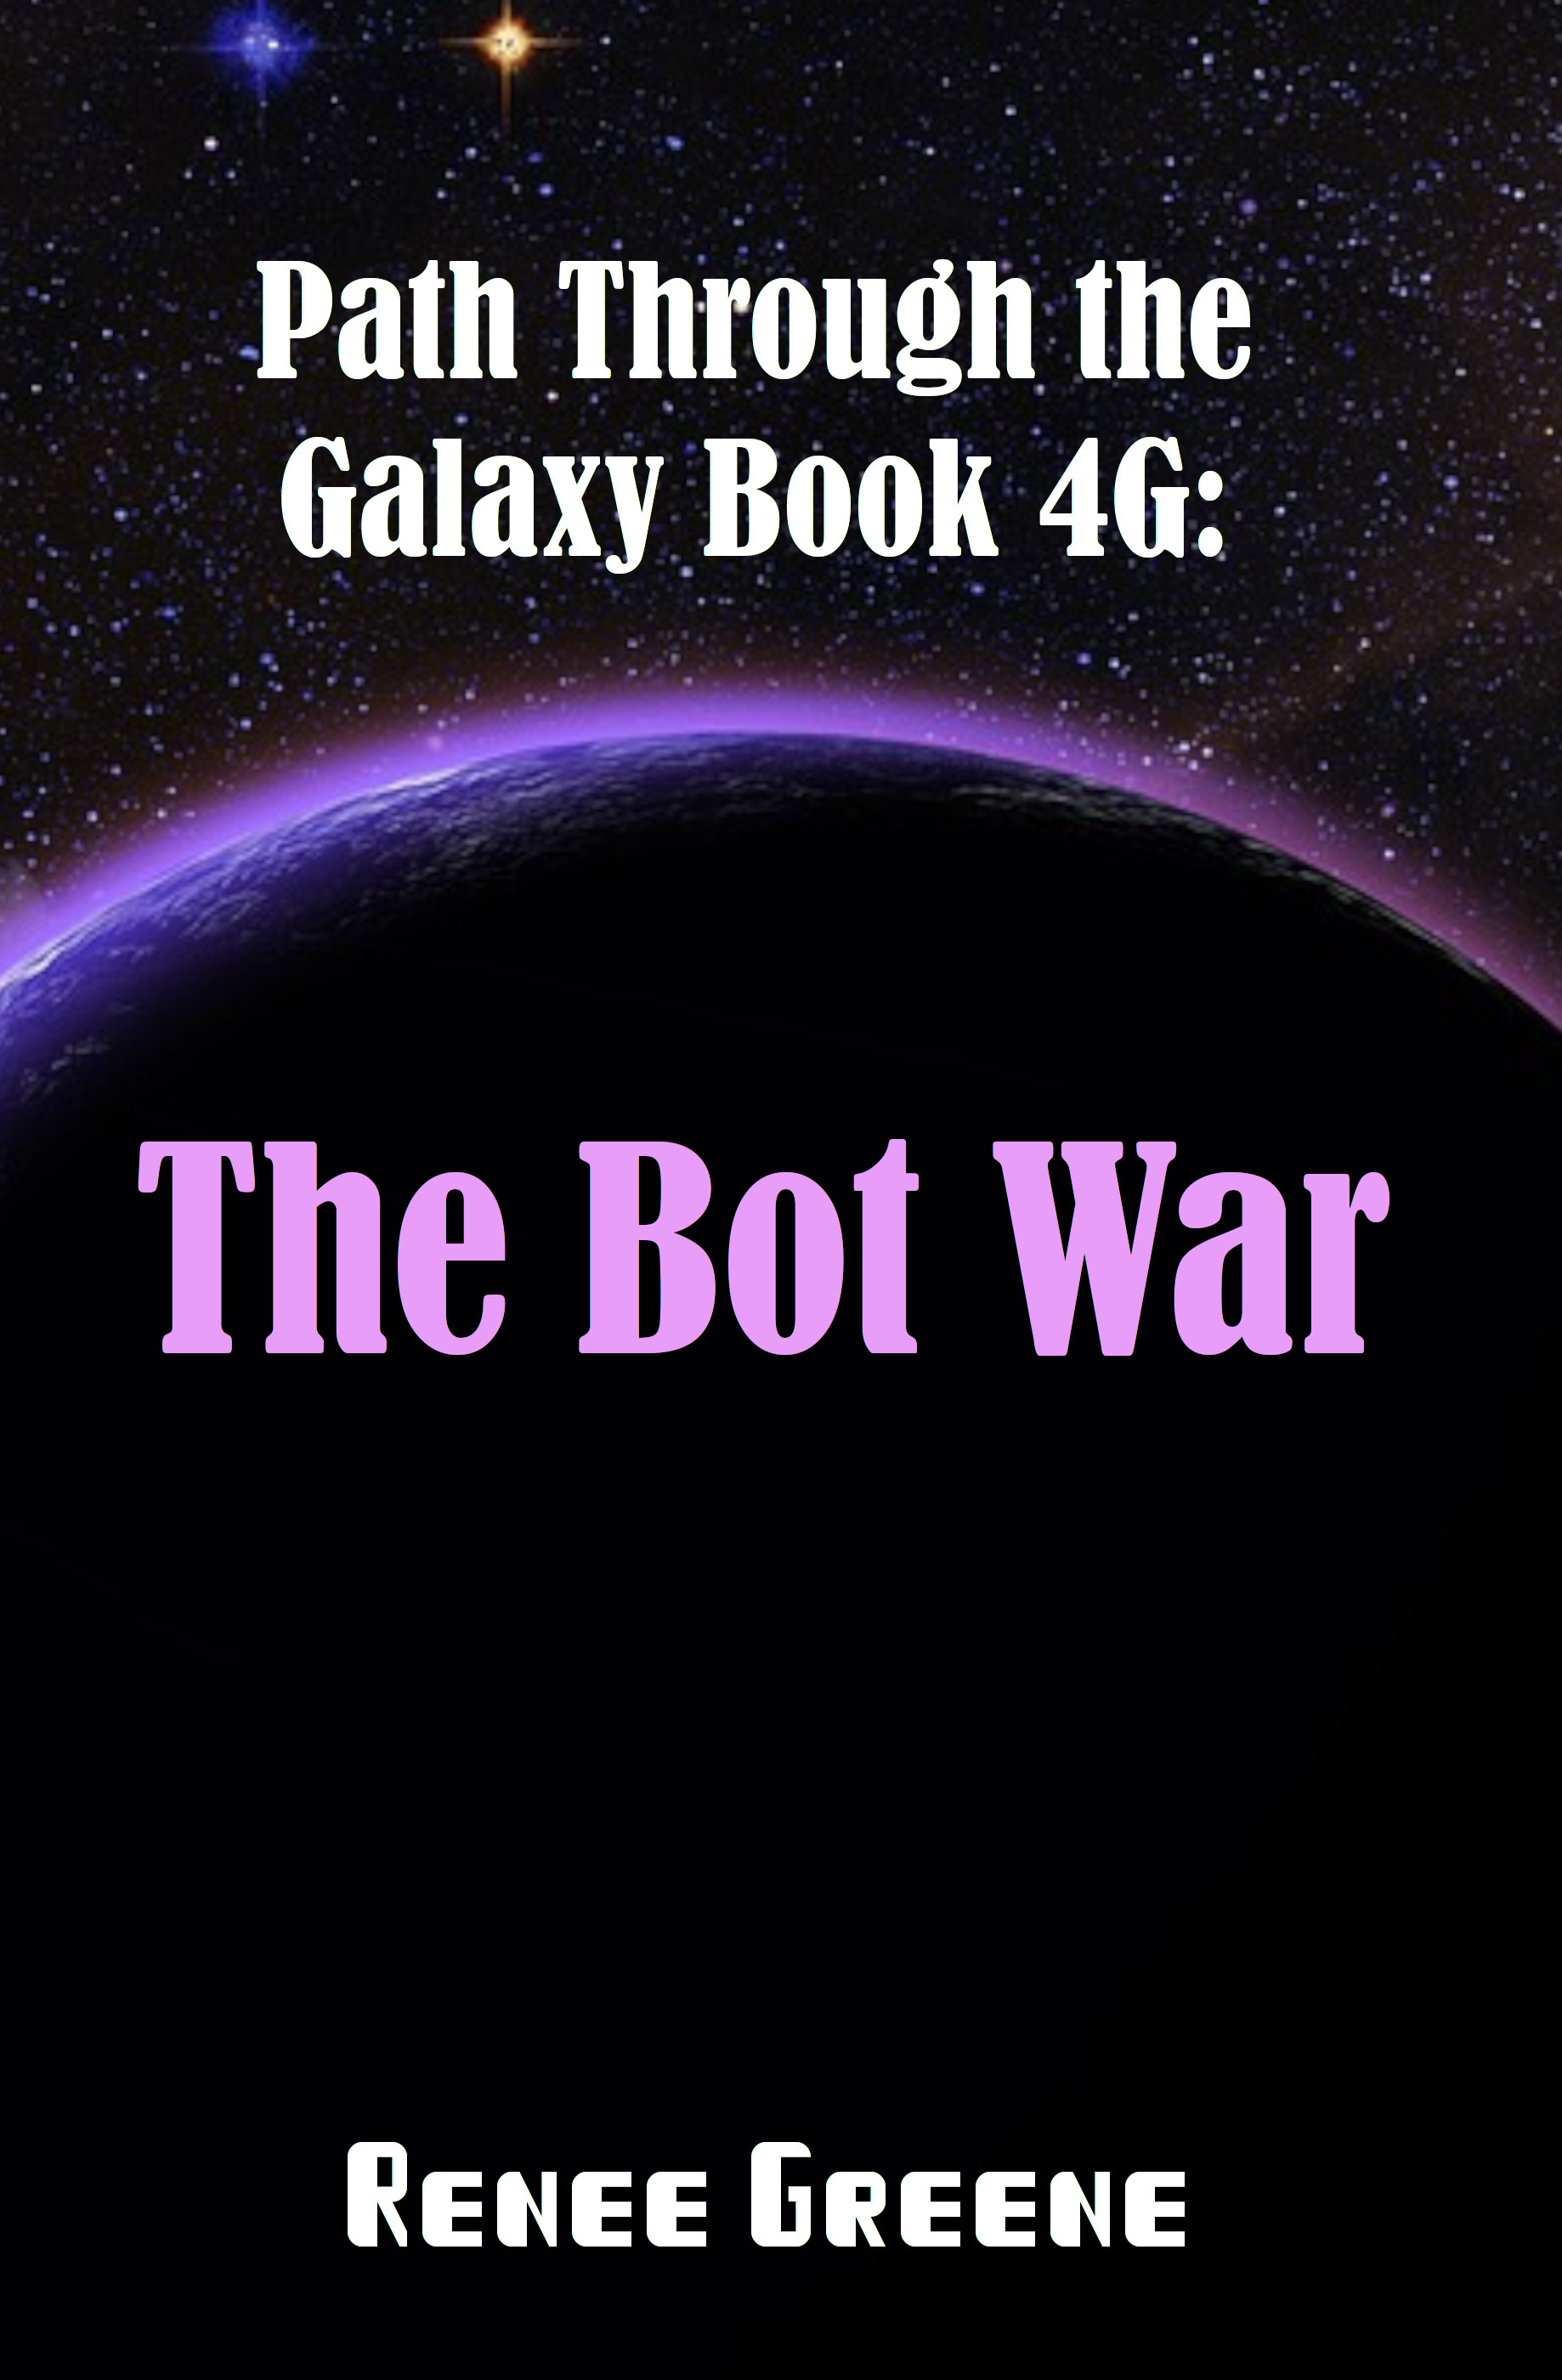 Path Through the Galaxy Book 4G: The Bot War